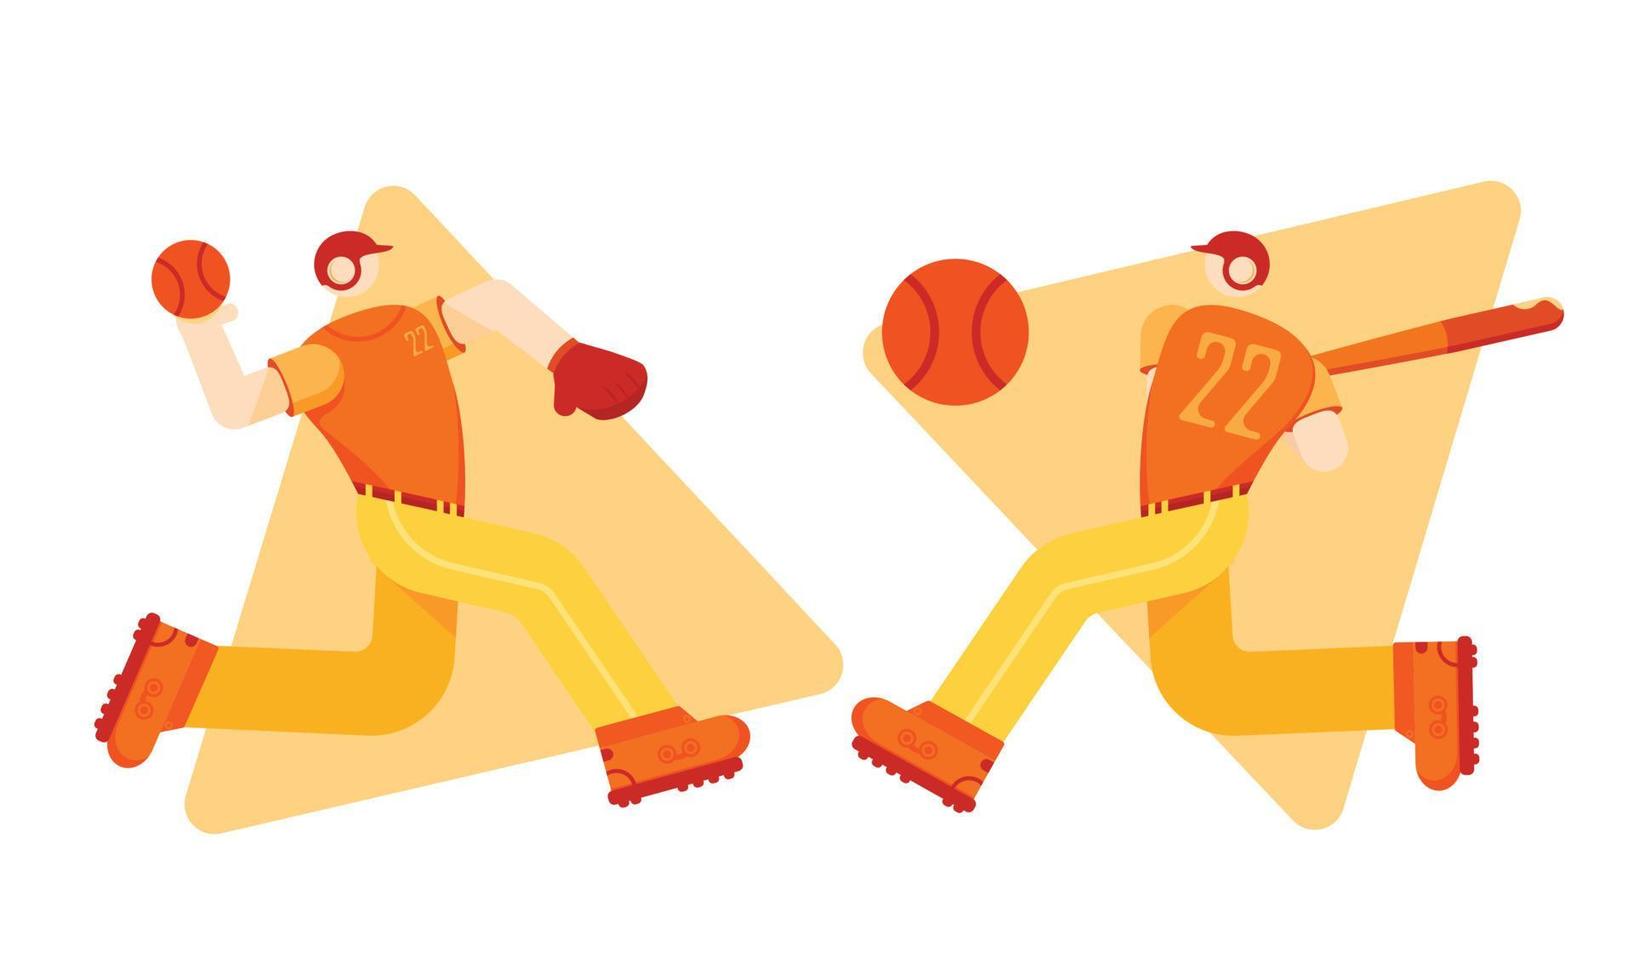 Baseballspieler-Charakterillustration mit flacher Illustration vektor